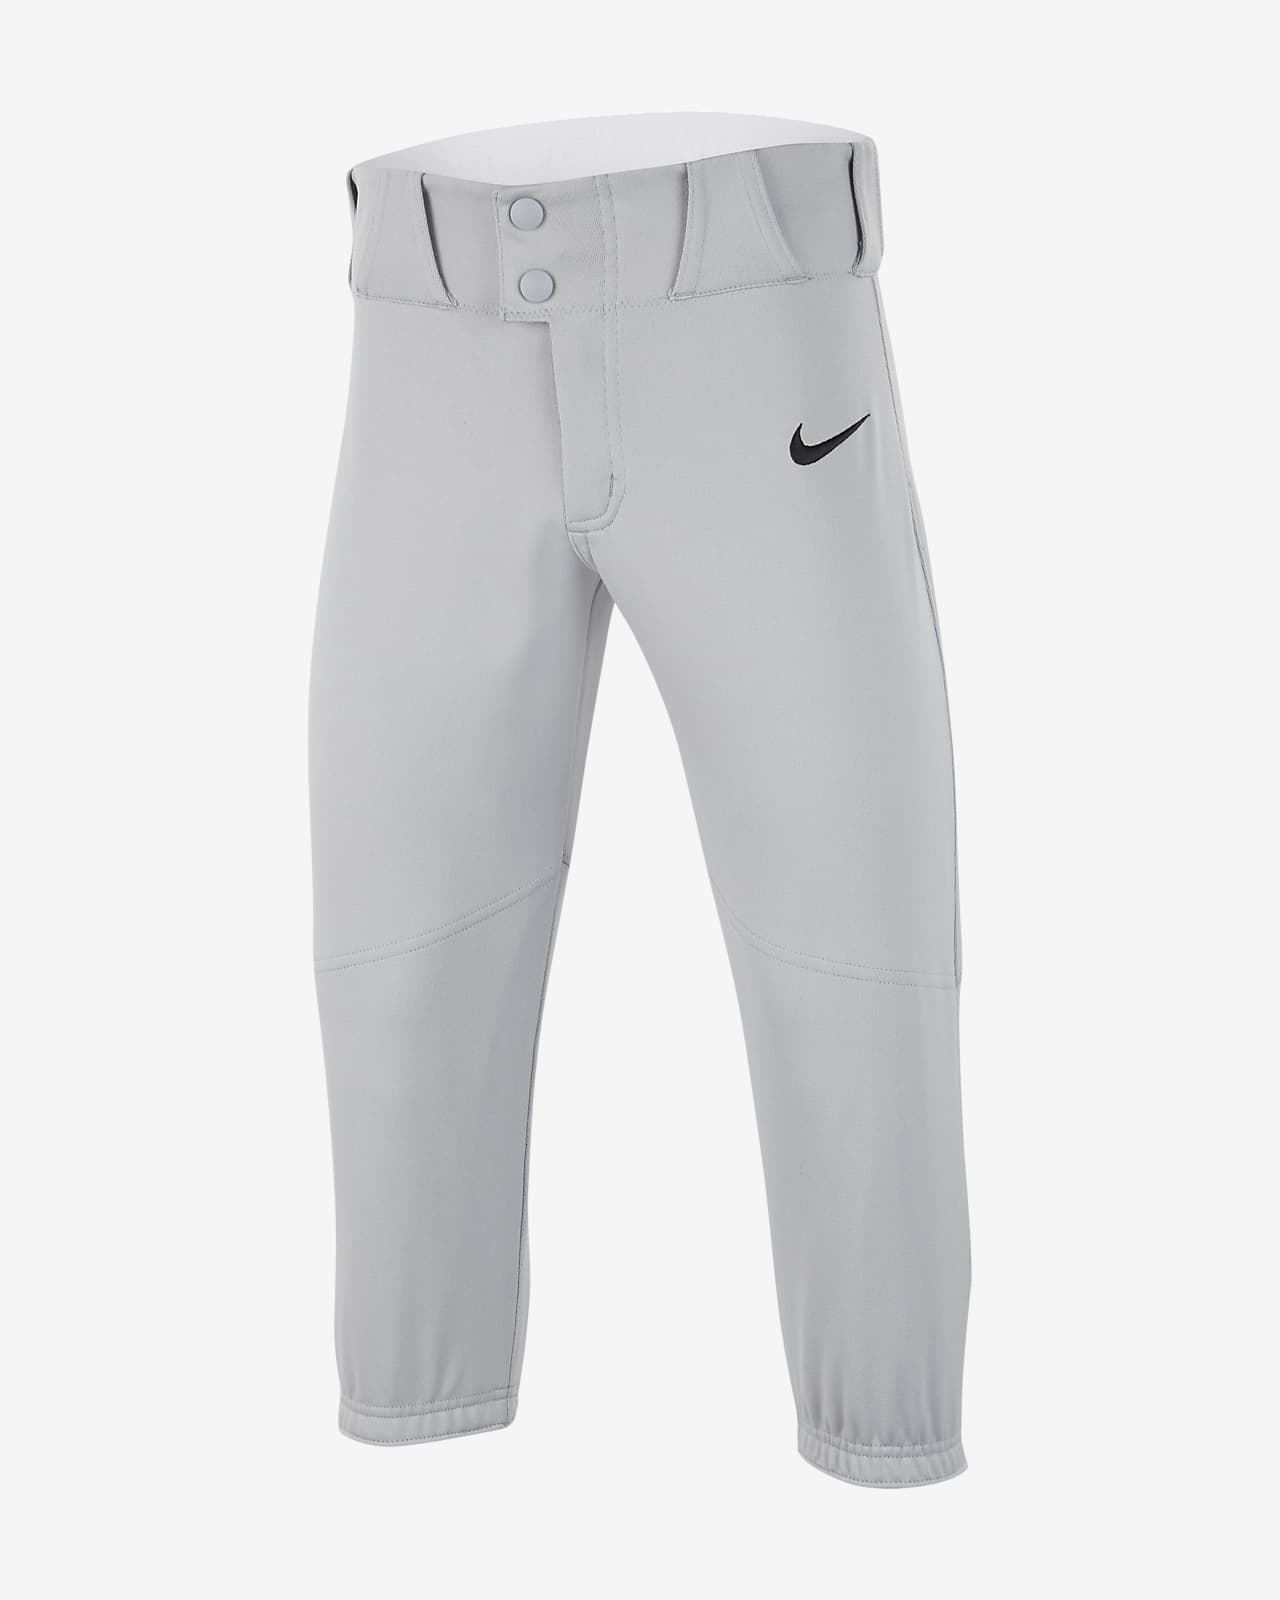 Nike Vapor Select Big Kids' (Boys') Baseball High Pants